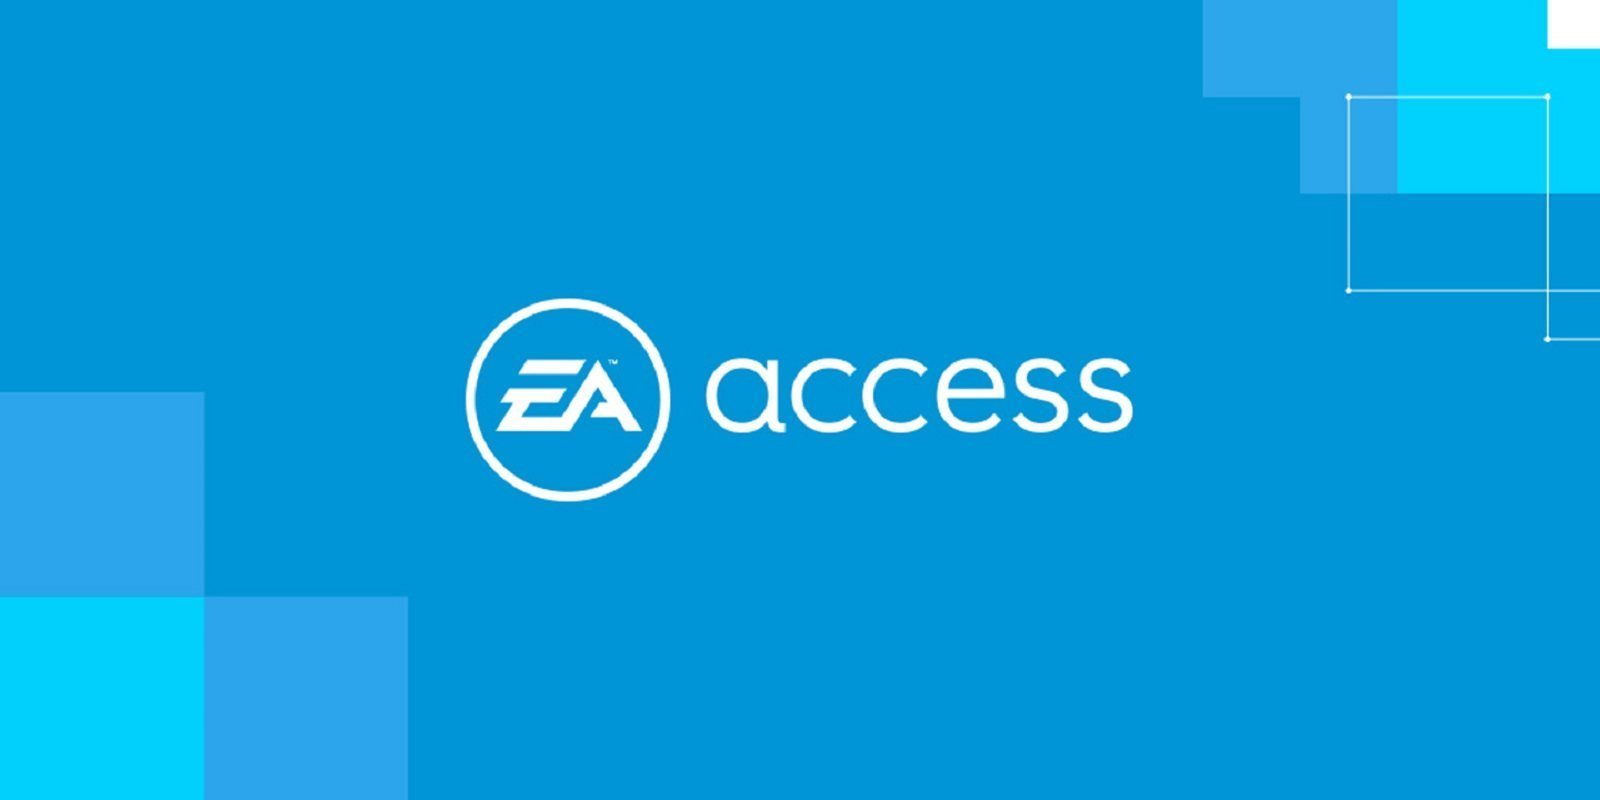 EA Access ya está disponible en PS4